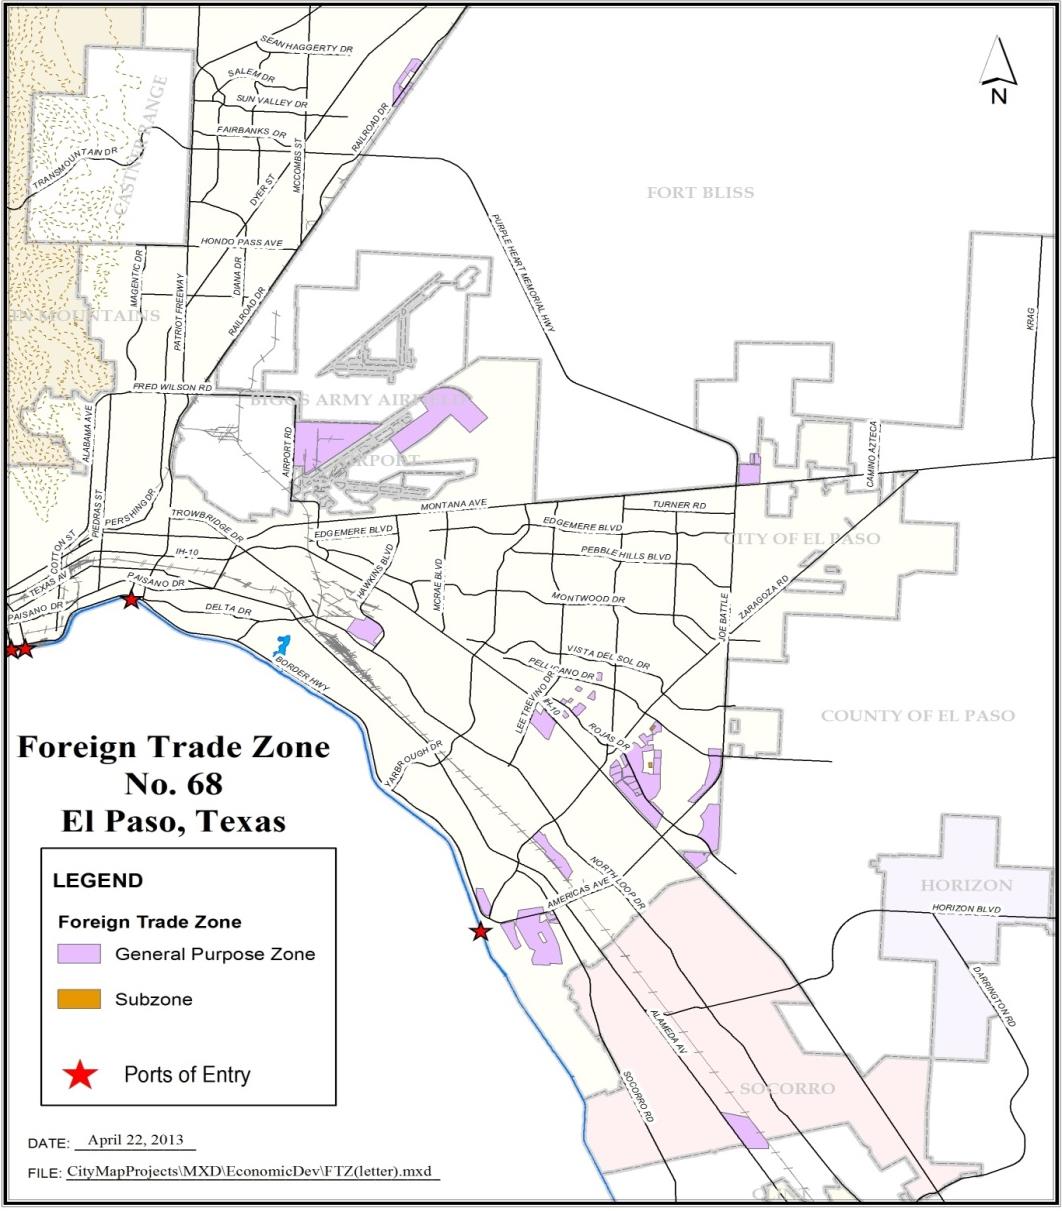 Panorama Zona de El Paso Mas de 3,400 acres designados en cinco sitios regionales, la mayor parte dentro de parques industriales: Site 1, Airport 1,065 acres Site